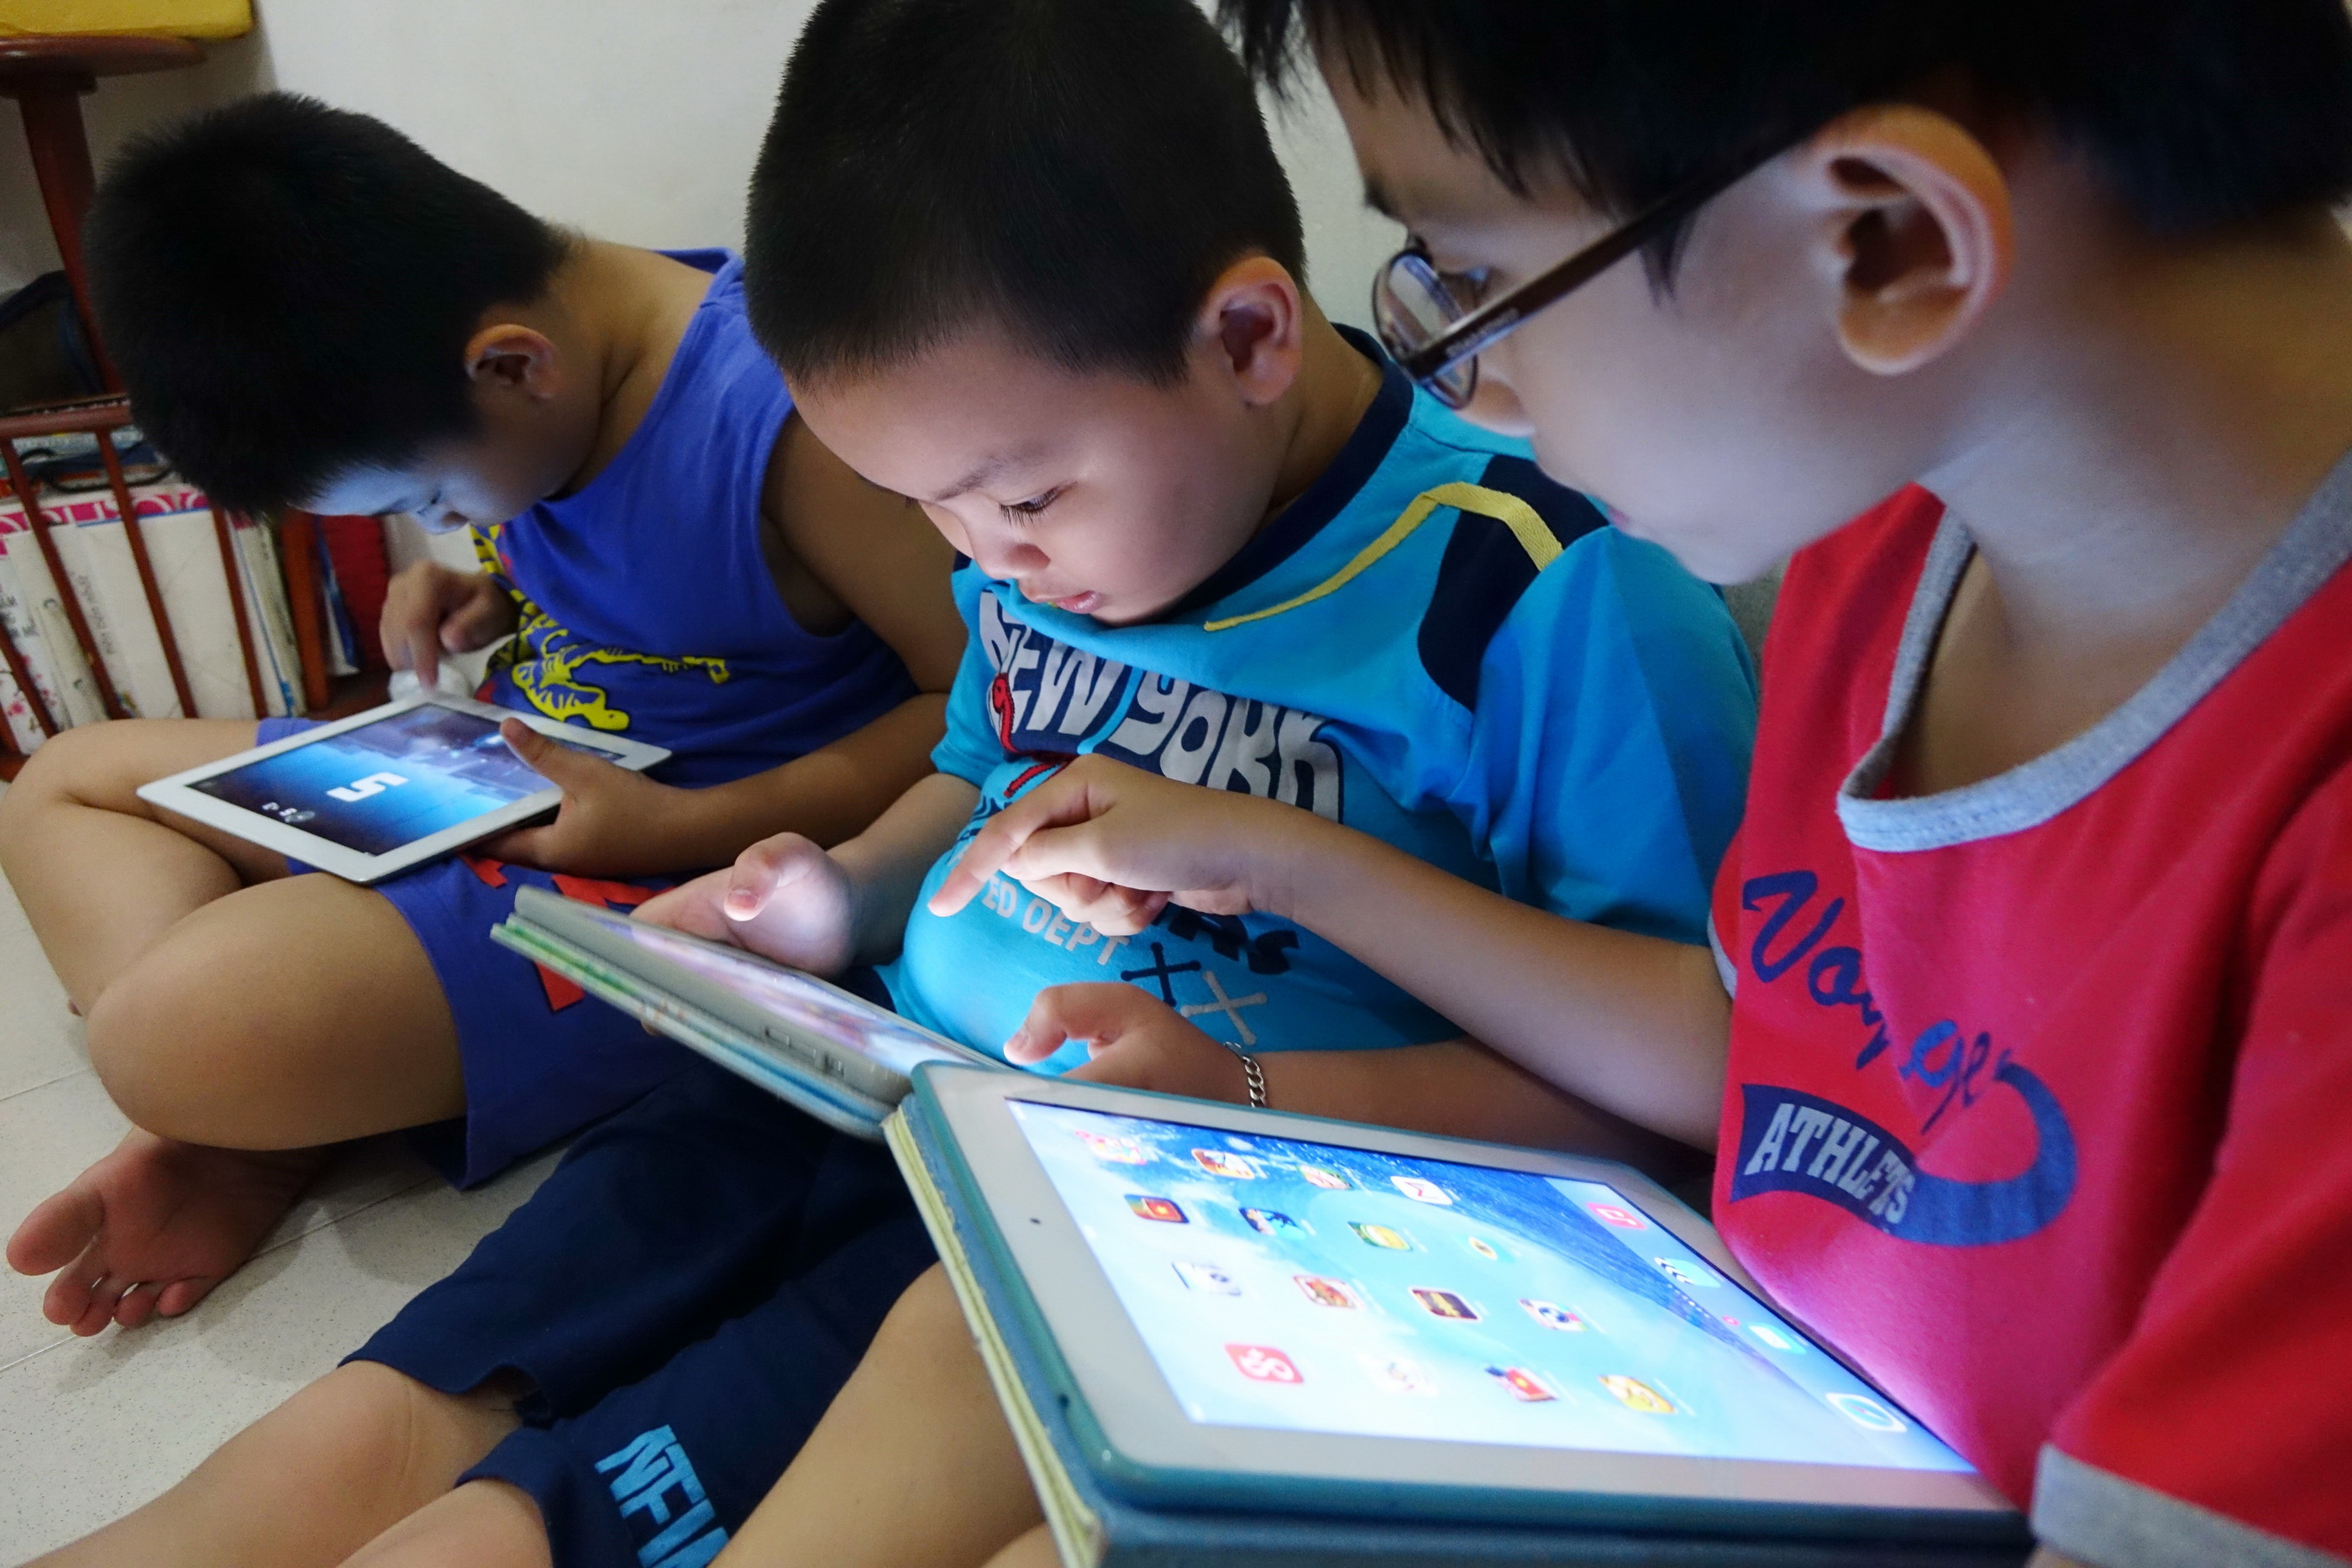 78% of Vietnam children under 6 use digital device: survey